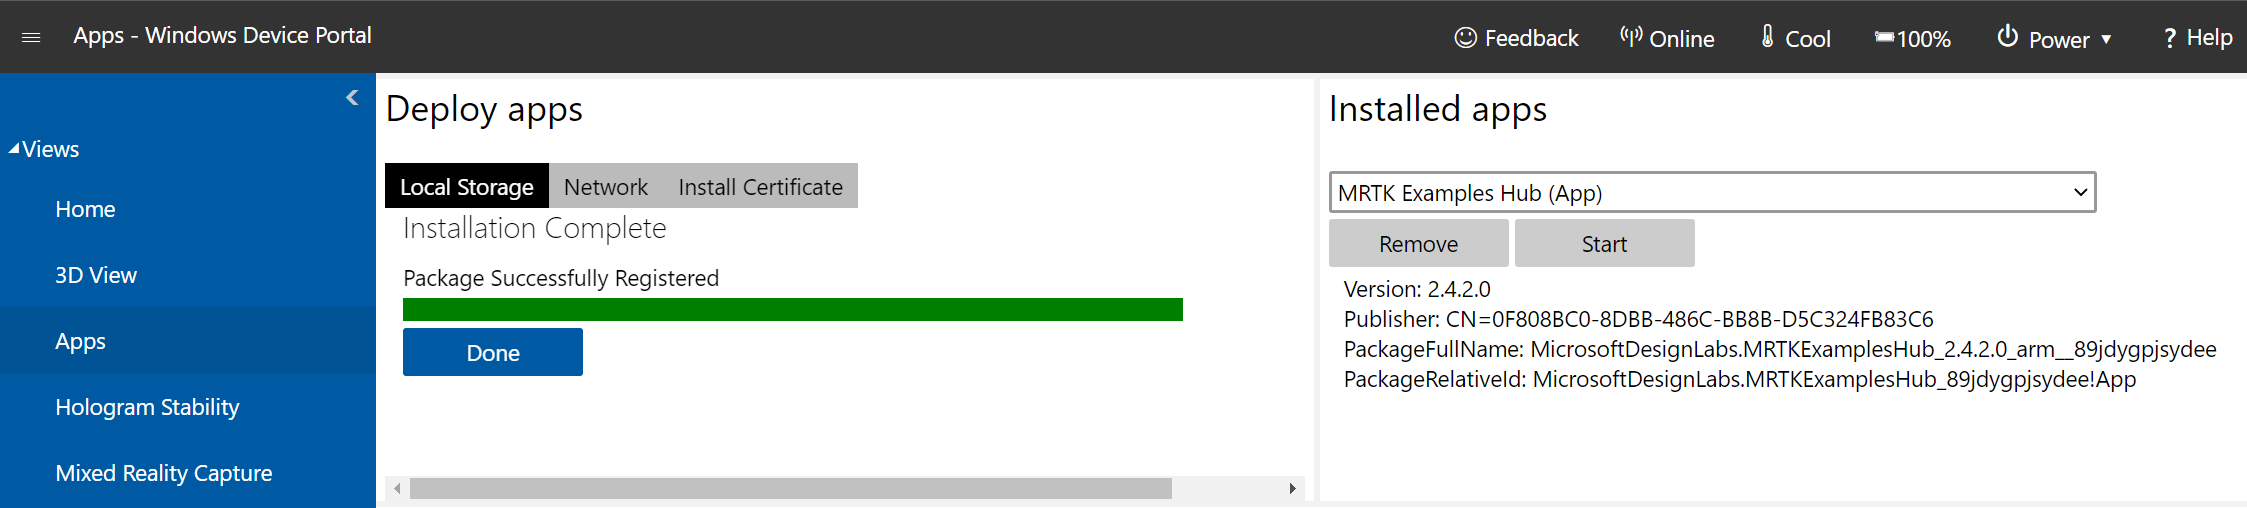 Screenshot della pagina di gestione Apps aperta nel Portale di dispositivi di Windows con l'indicazione dell'installazione completata